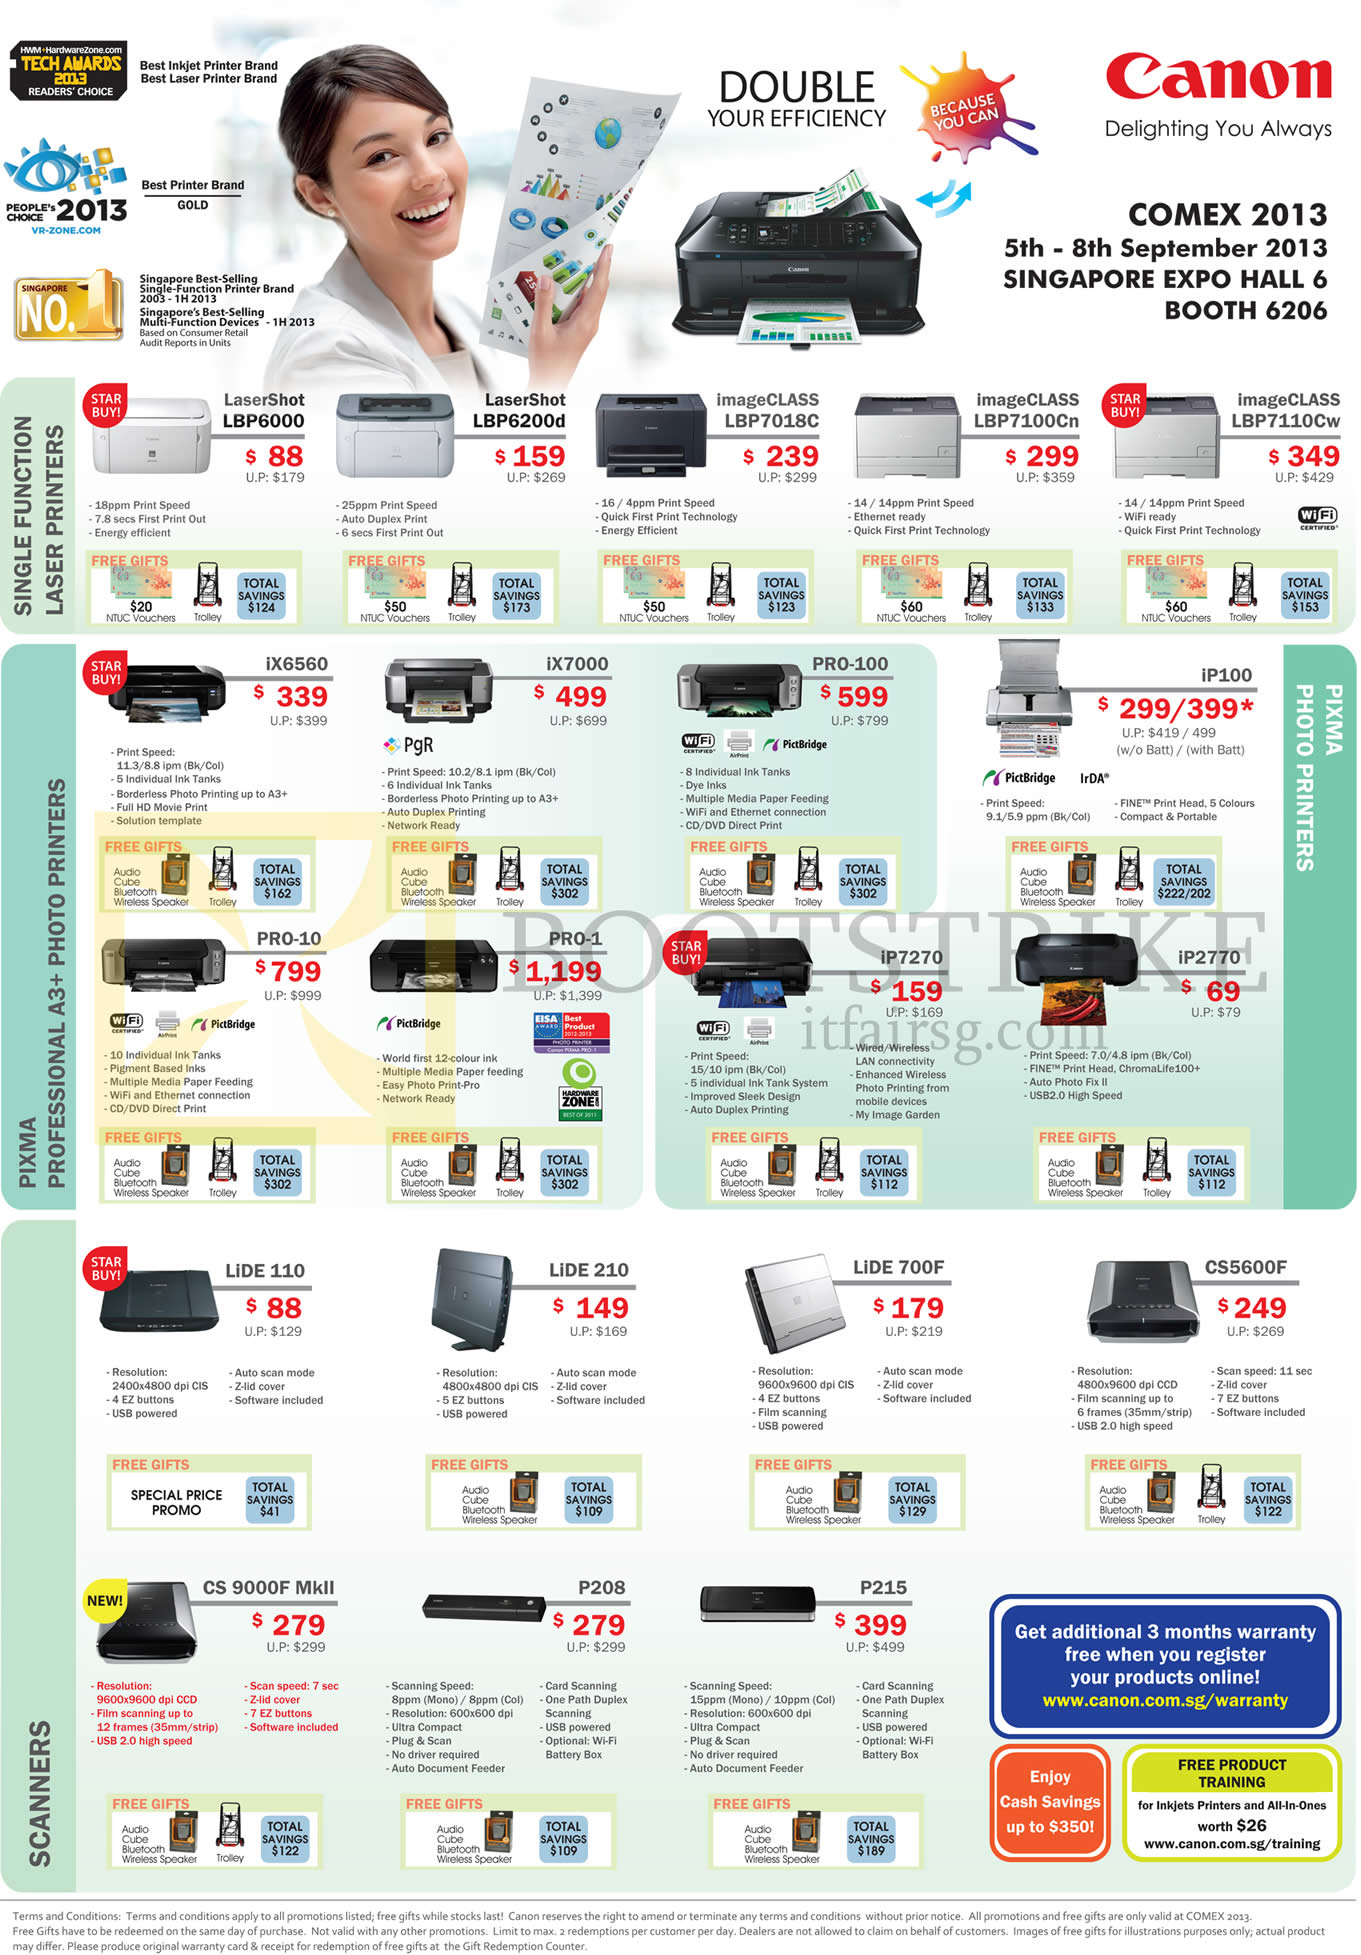 COMEX 2013 price list image brochure of Canon Printers LaserShot LBP6000 LBP6200d LBP7018C LBP7100Cn LBP7110Cw, Pixma IX6560 7000 Pro-100, IP7270 2770, Lide Scanners 110 700F 9000F P215 CS5600F